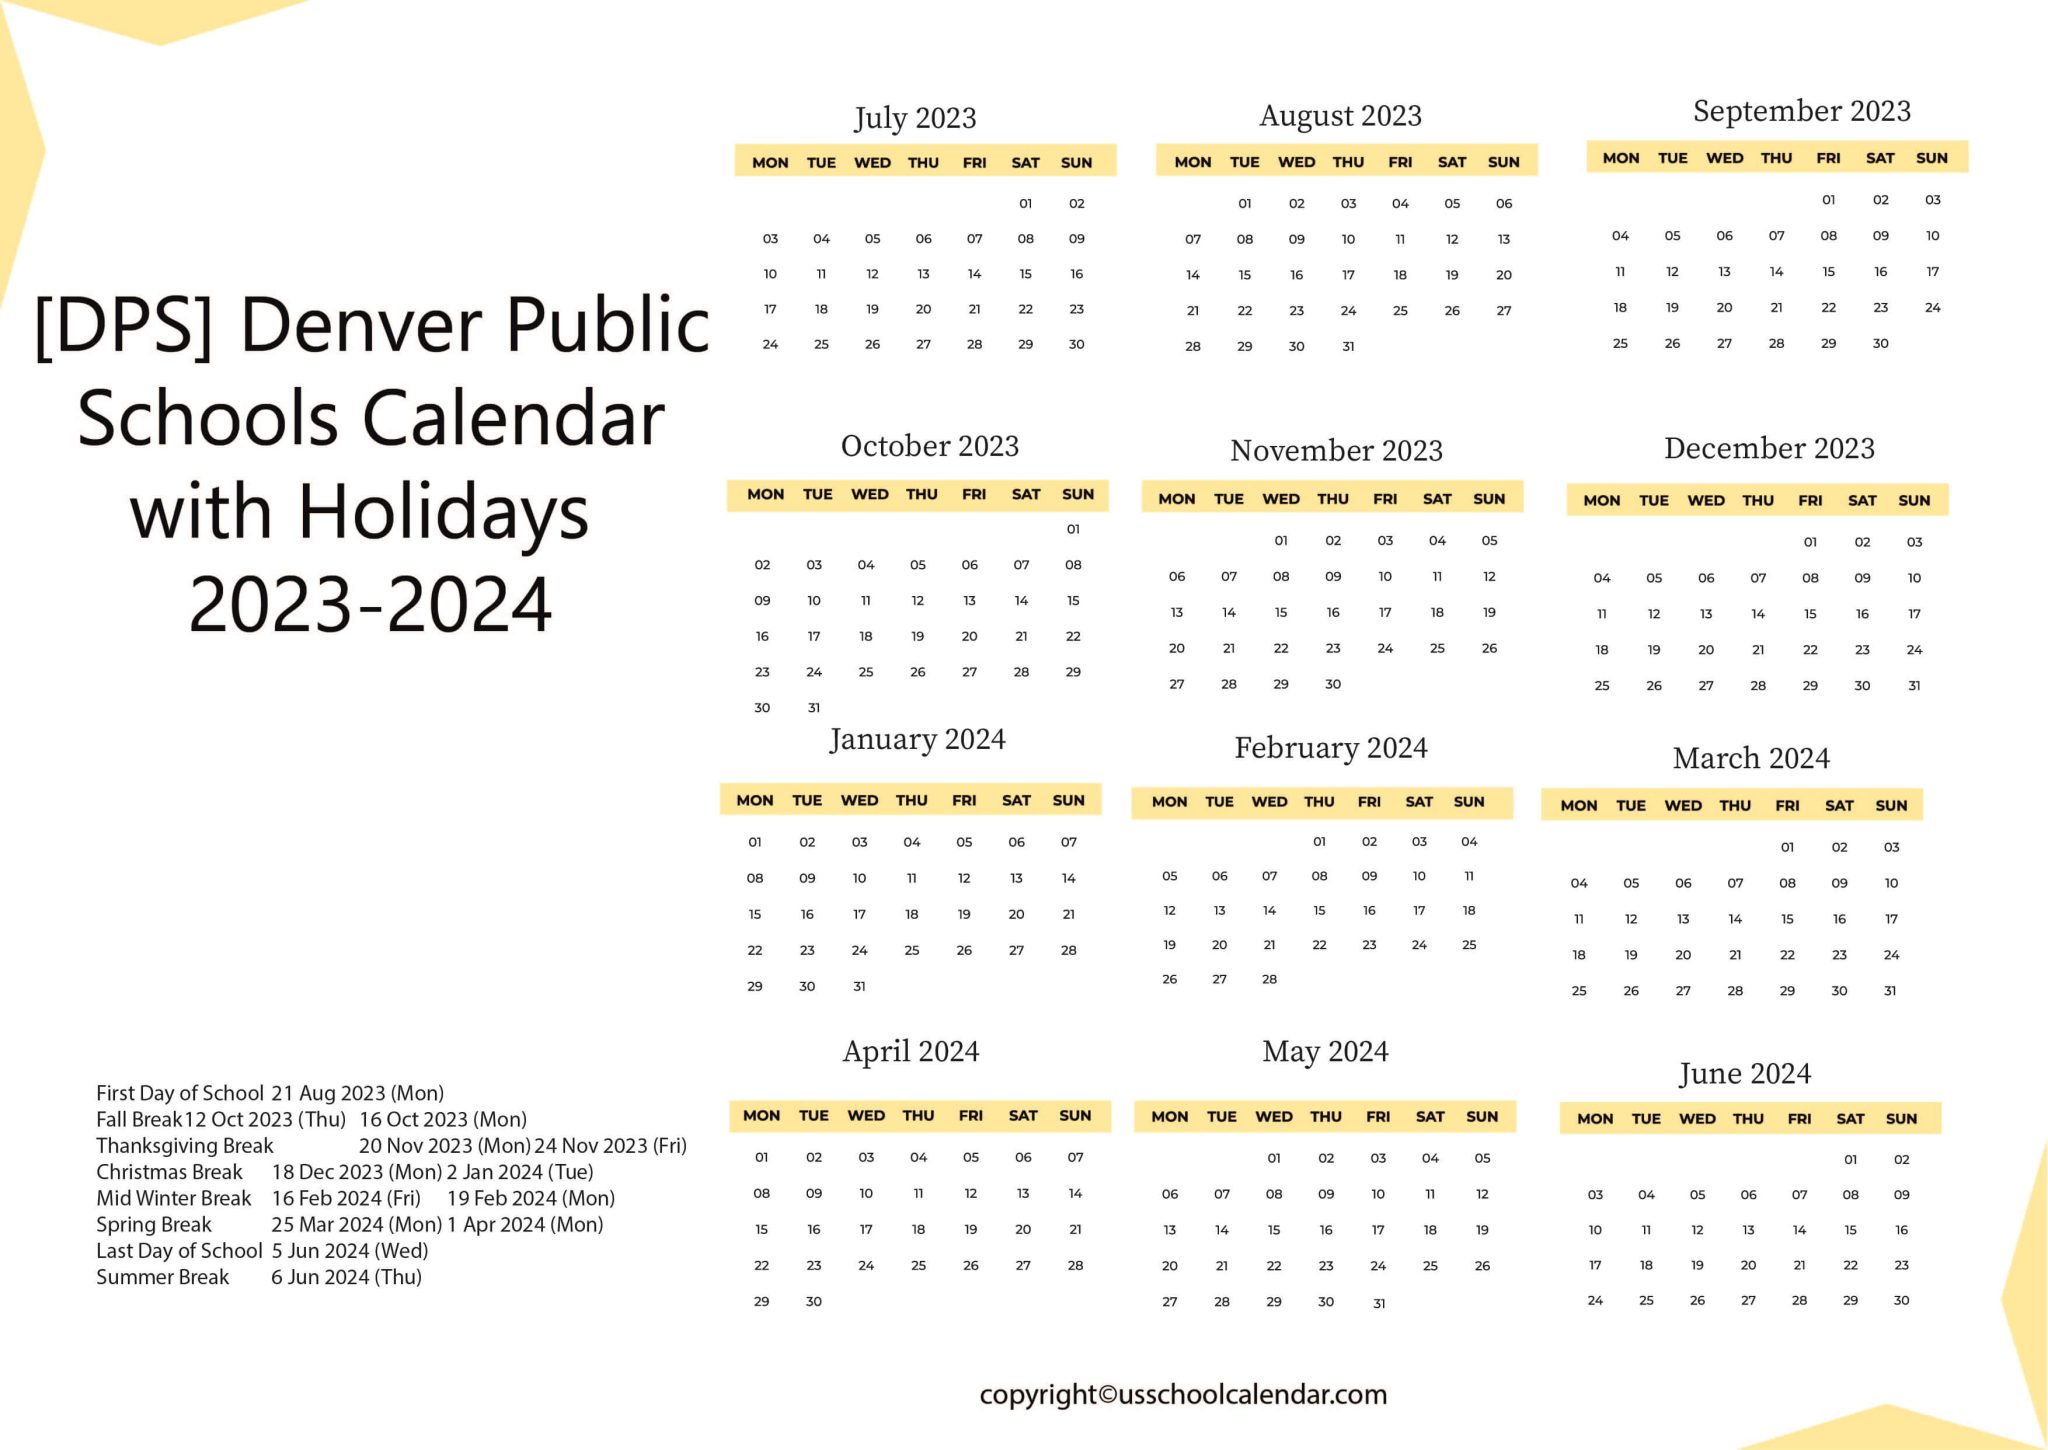 DPS Denver Public Schools Calendar 2048x1450 